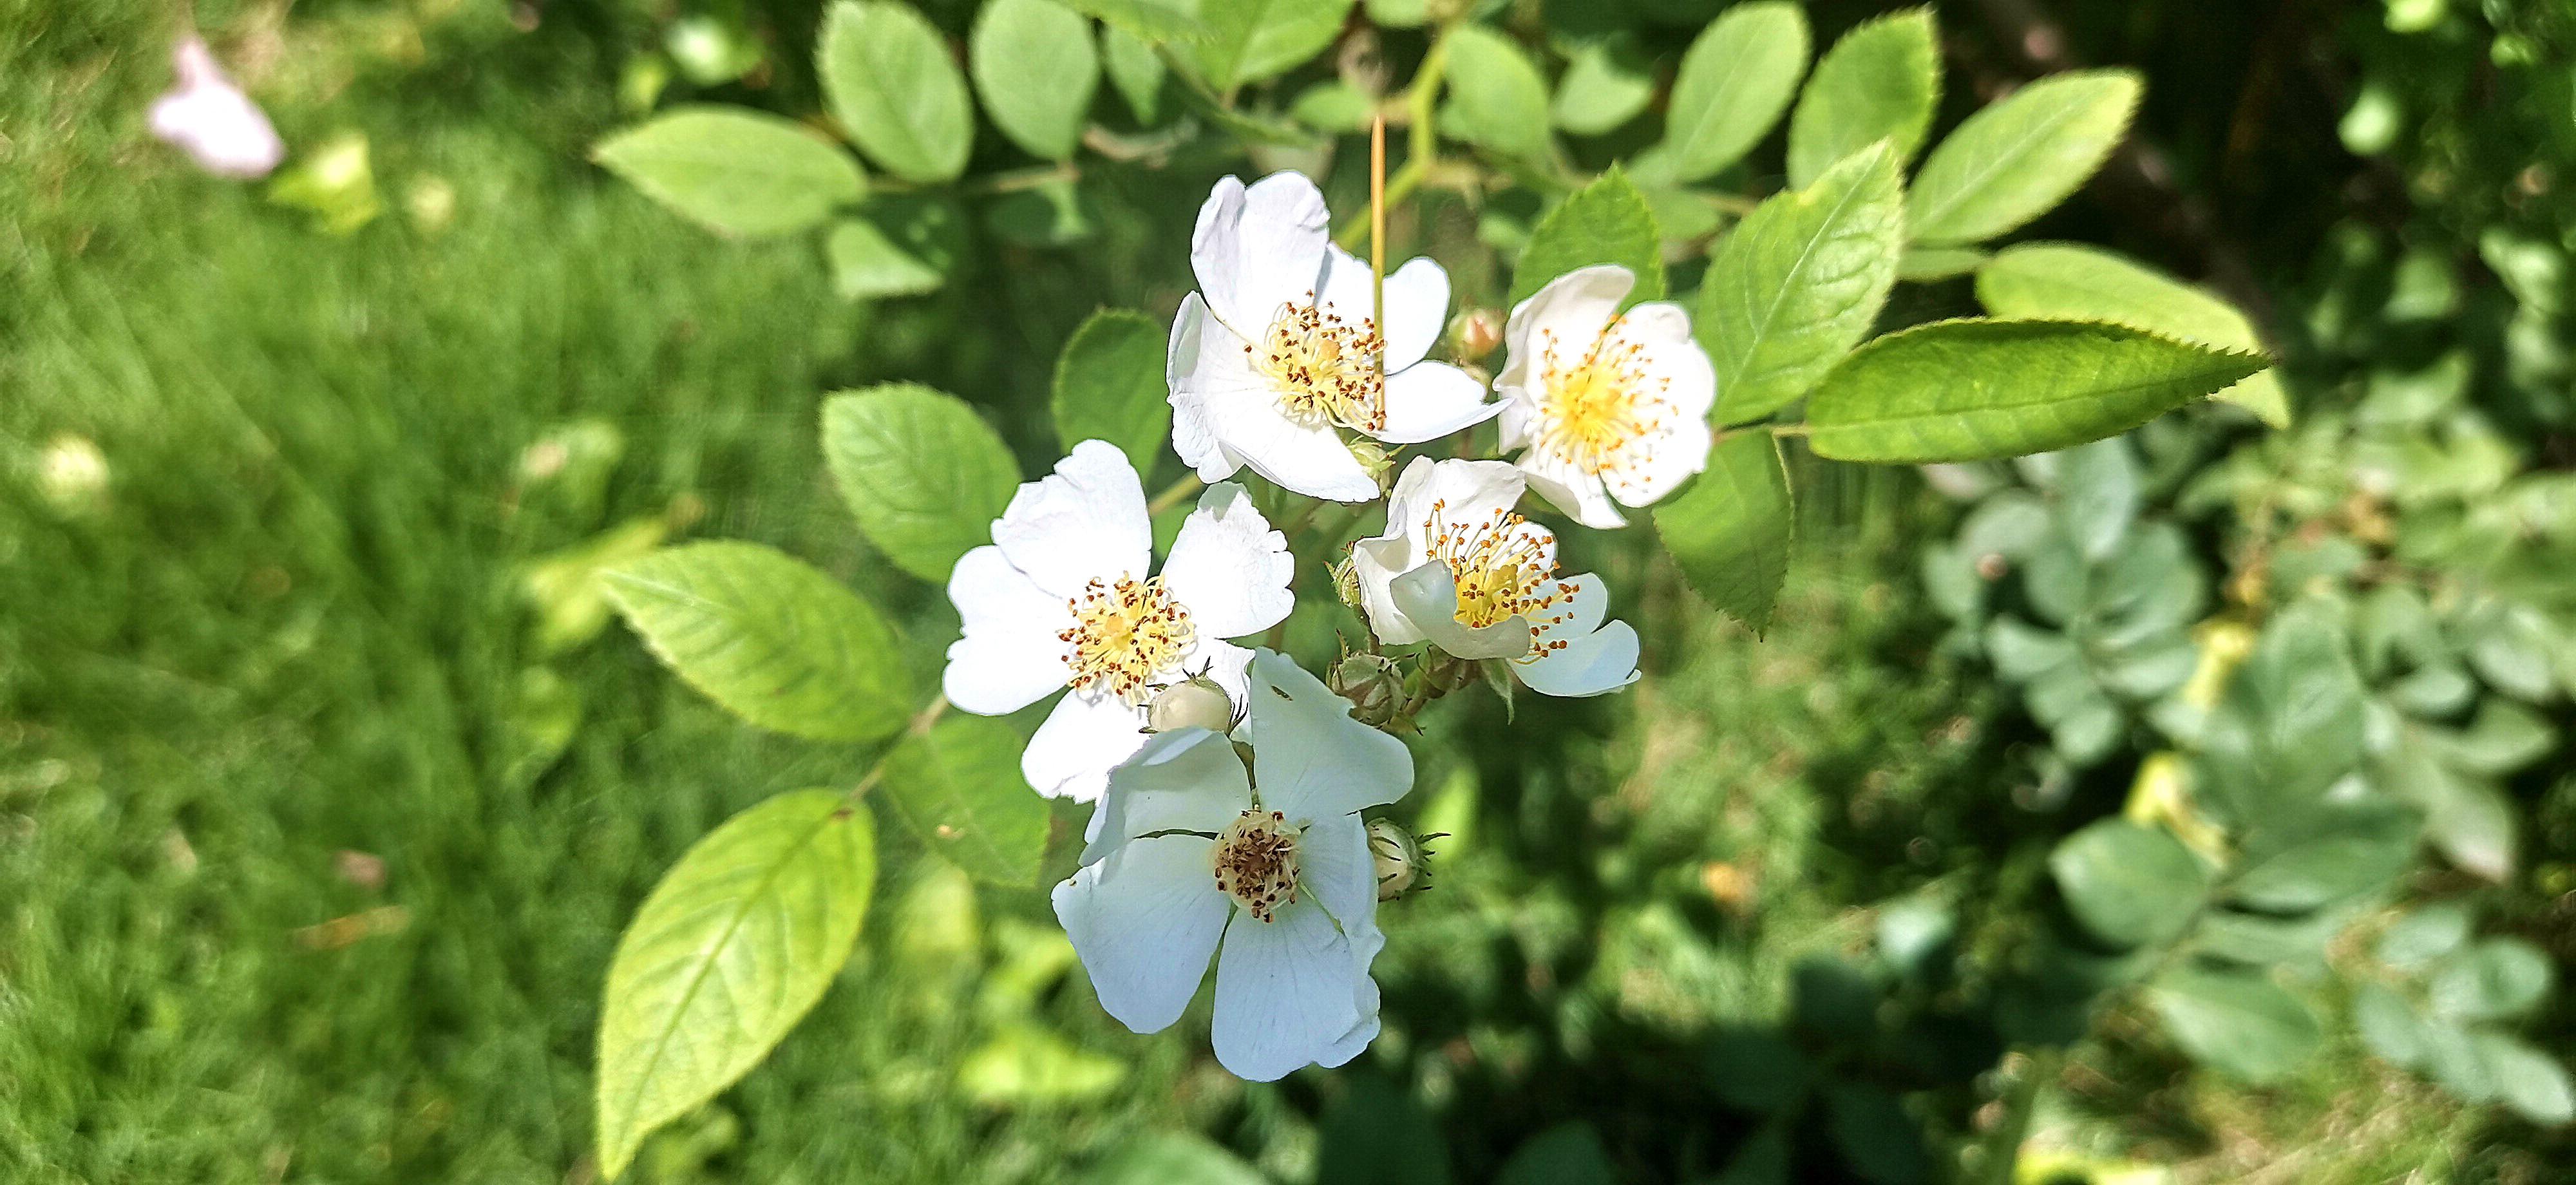 吉安视觉 后河味道的白色野蔷薇花开烂漫 知乎